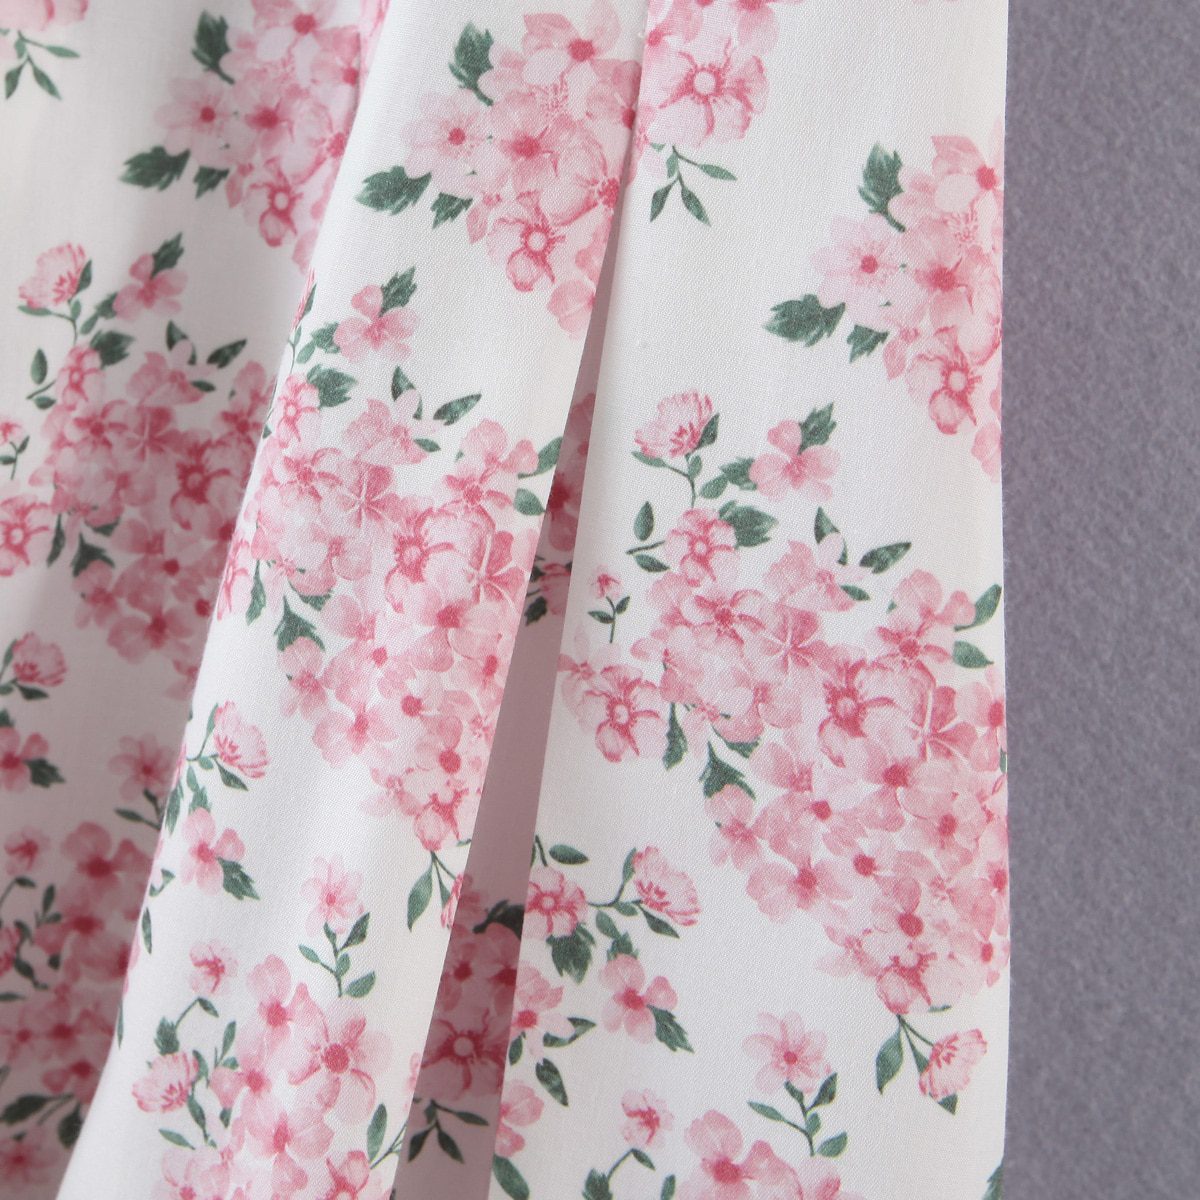 Slit V Neck White Pink Floral Print Short Pants Jumpsuit in Jumpsuits & Rompers